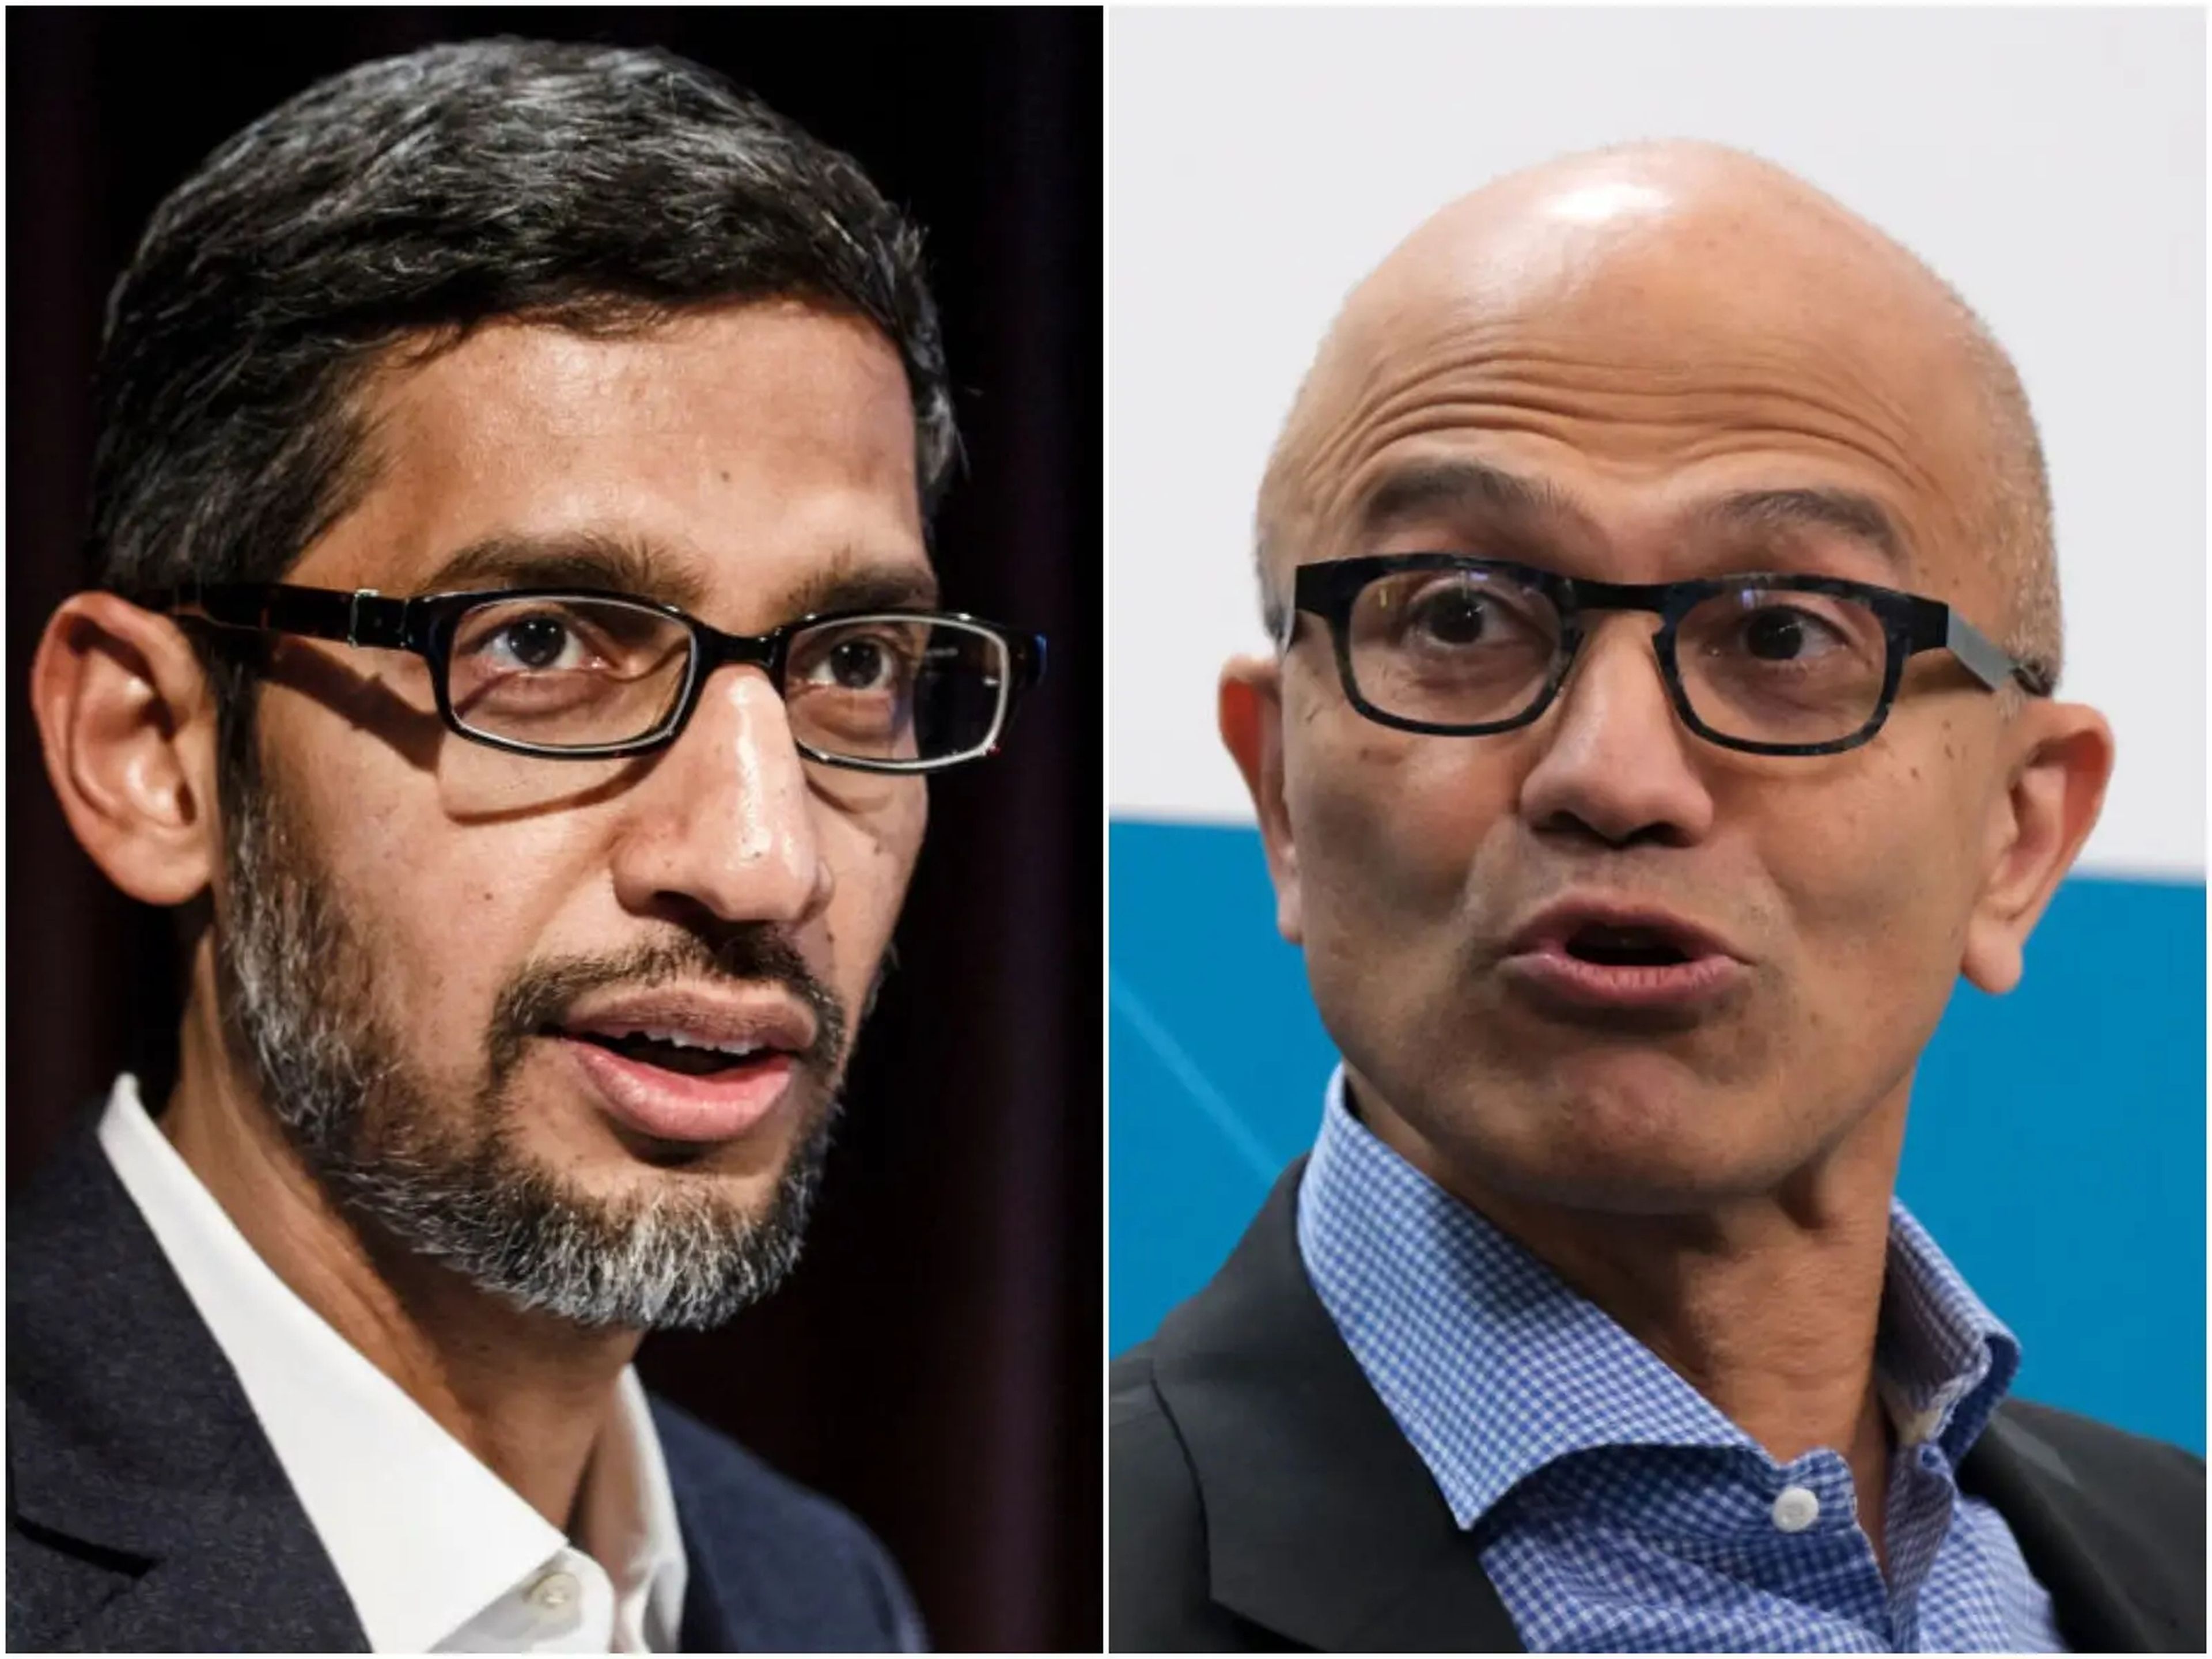 El CEO de Google Sundar Pichai (izquierda) y el CEO de Microsoft Satya Nadella (derecha).